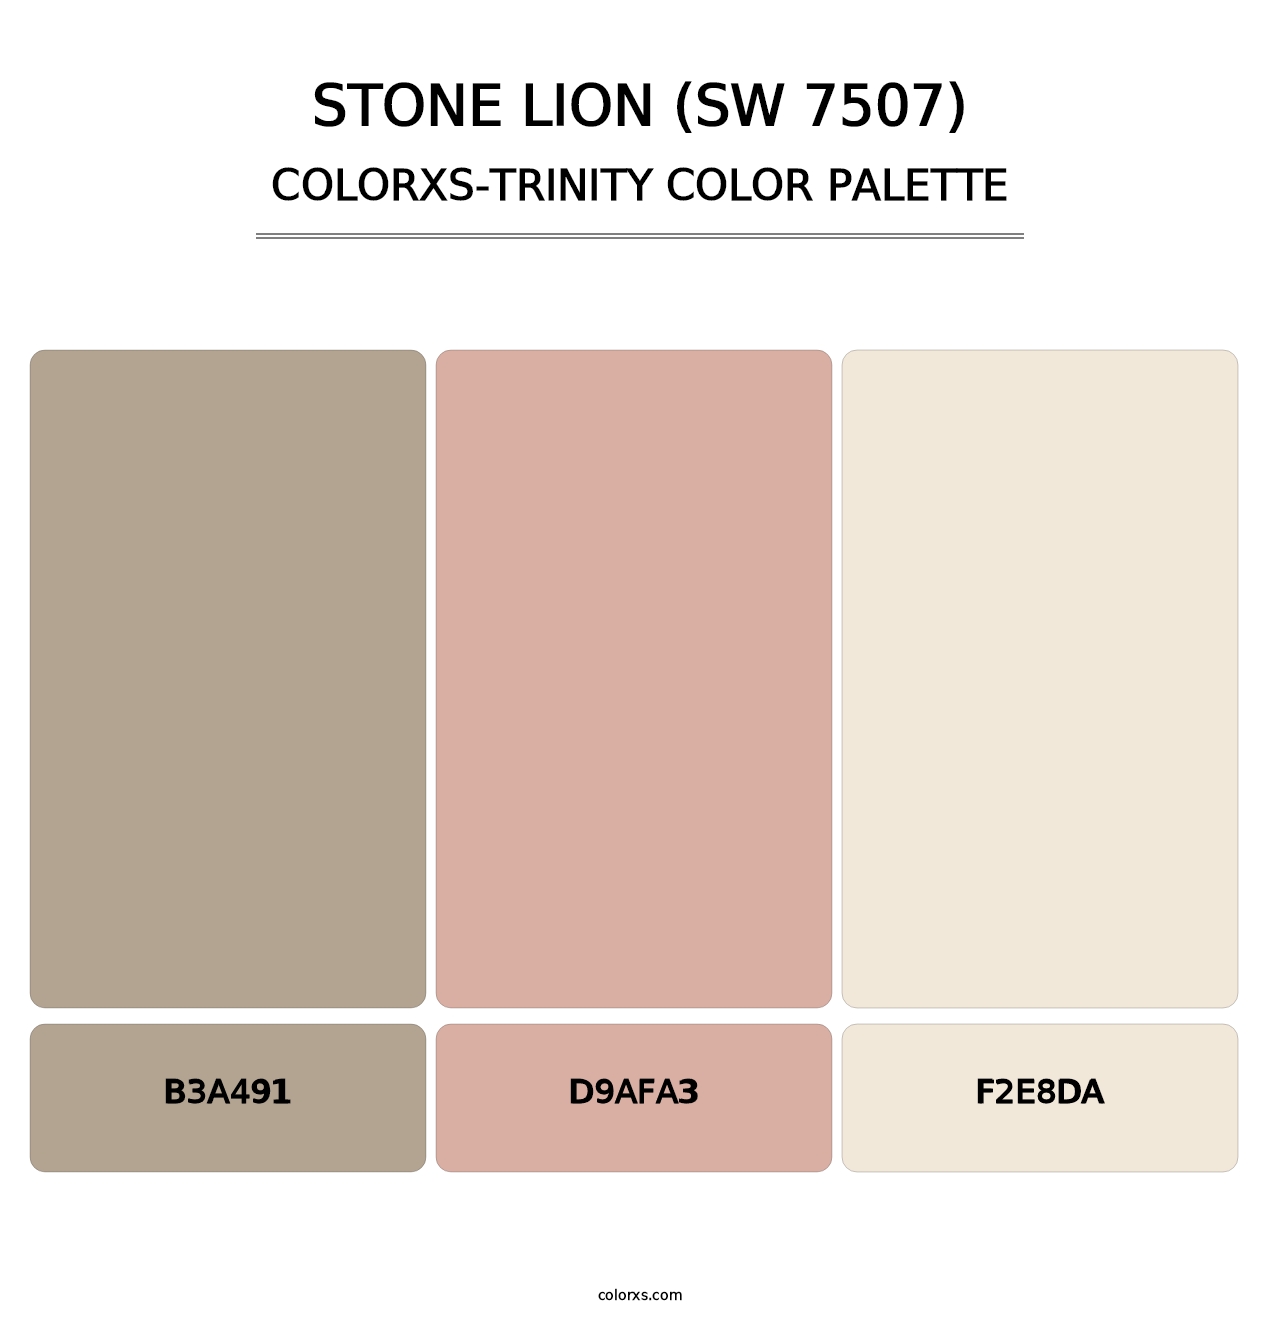 Stone Lion (SW 7507) - Colorxs Trinity Palette